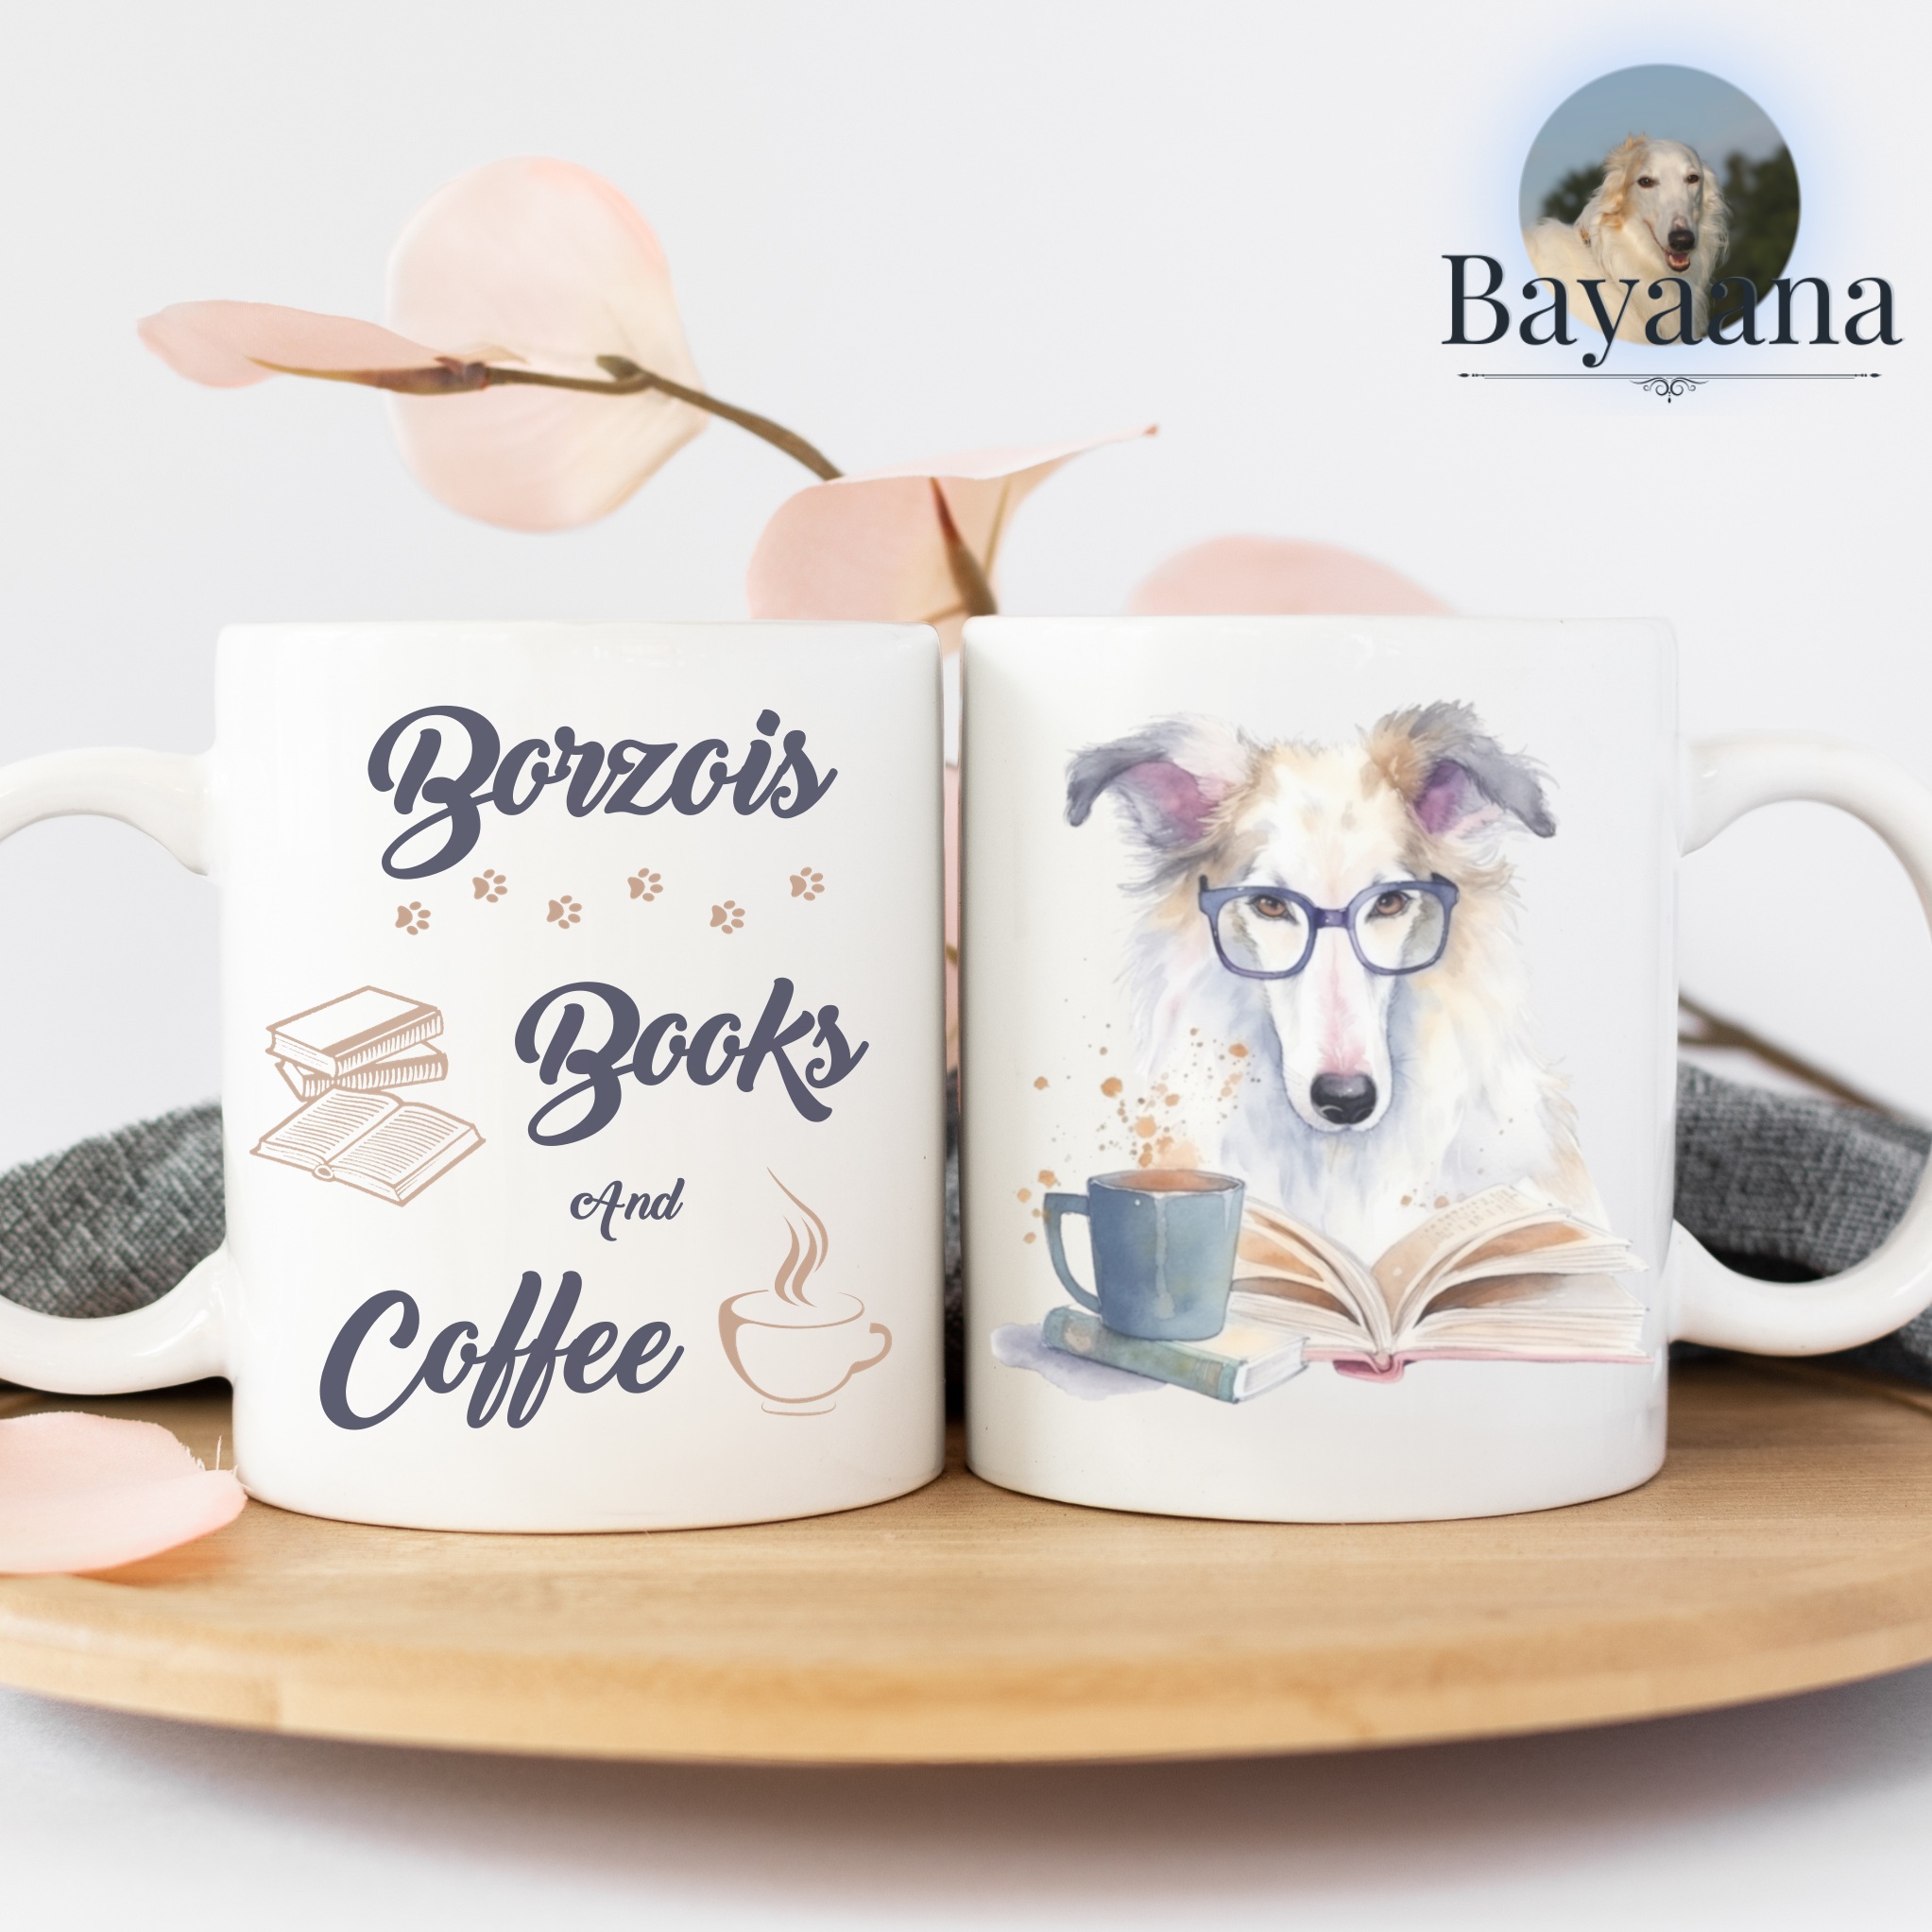 Borzois books and coffee ceramic mug